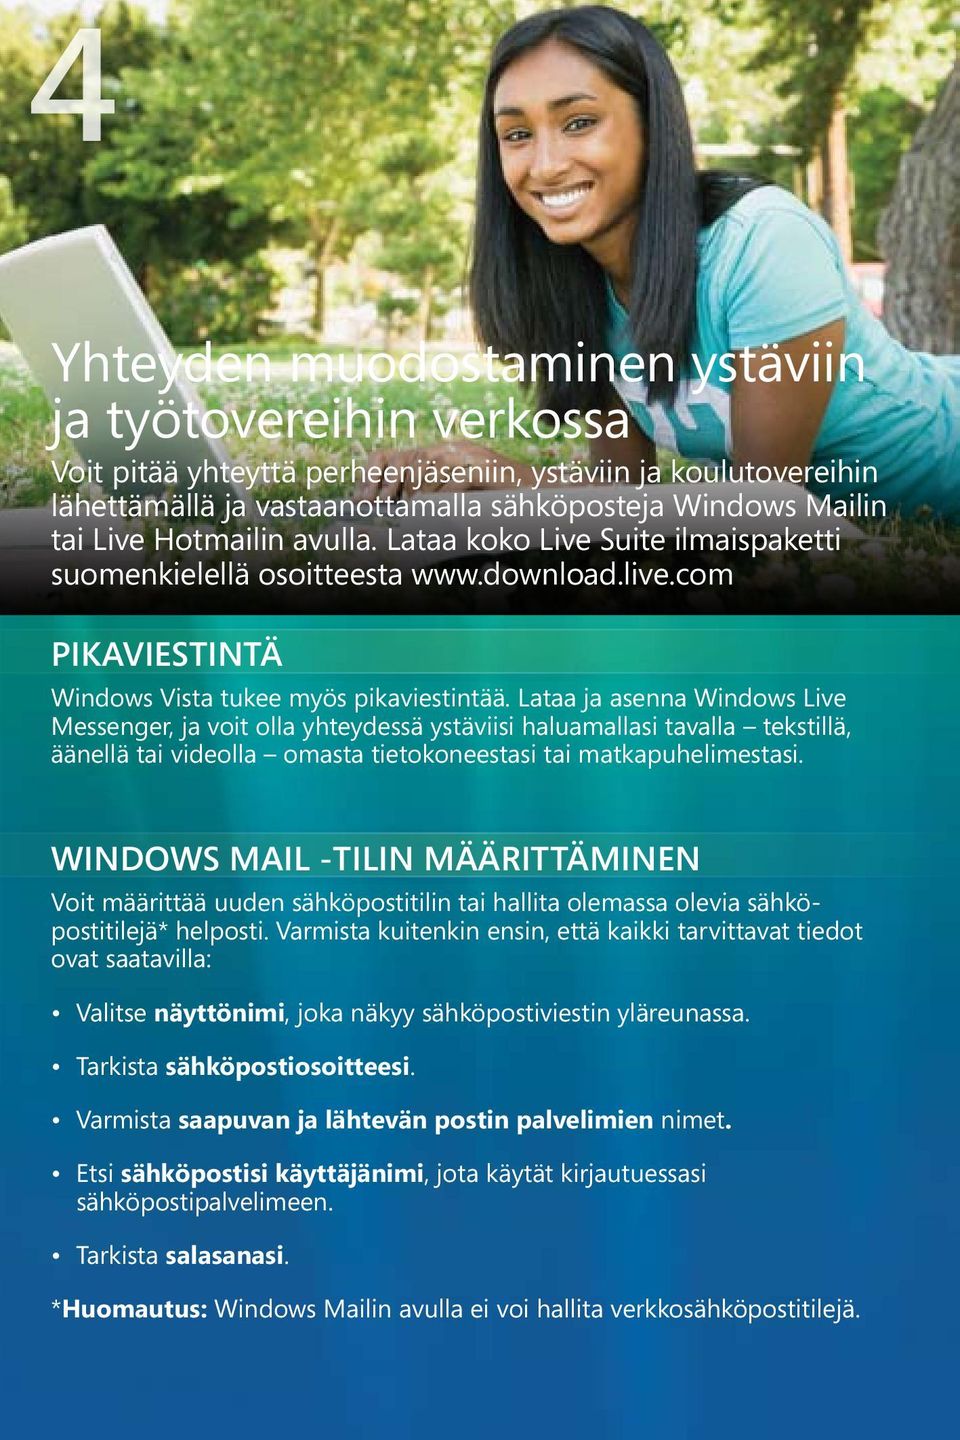 Lataa ja asenna Windows Live Messenger, ja voit olla yhteydessä ystäviisi haluamallasi tavalla tekstillä, äänellä tai videolla omasta tietokoneestasi tai matkapuhelimestasi.